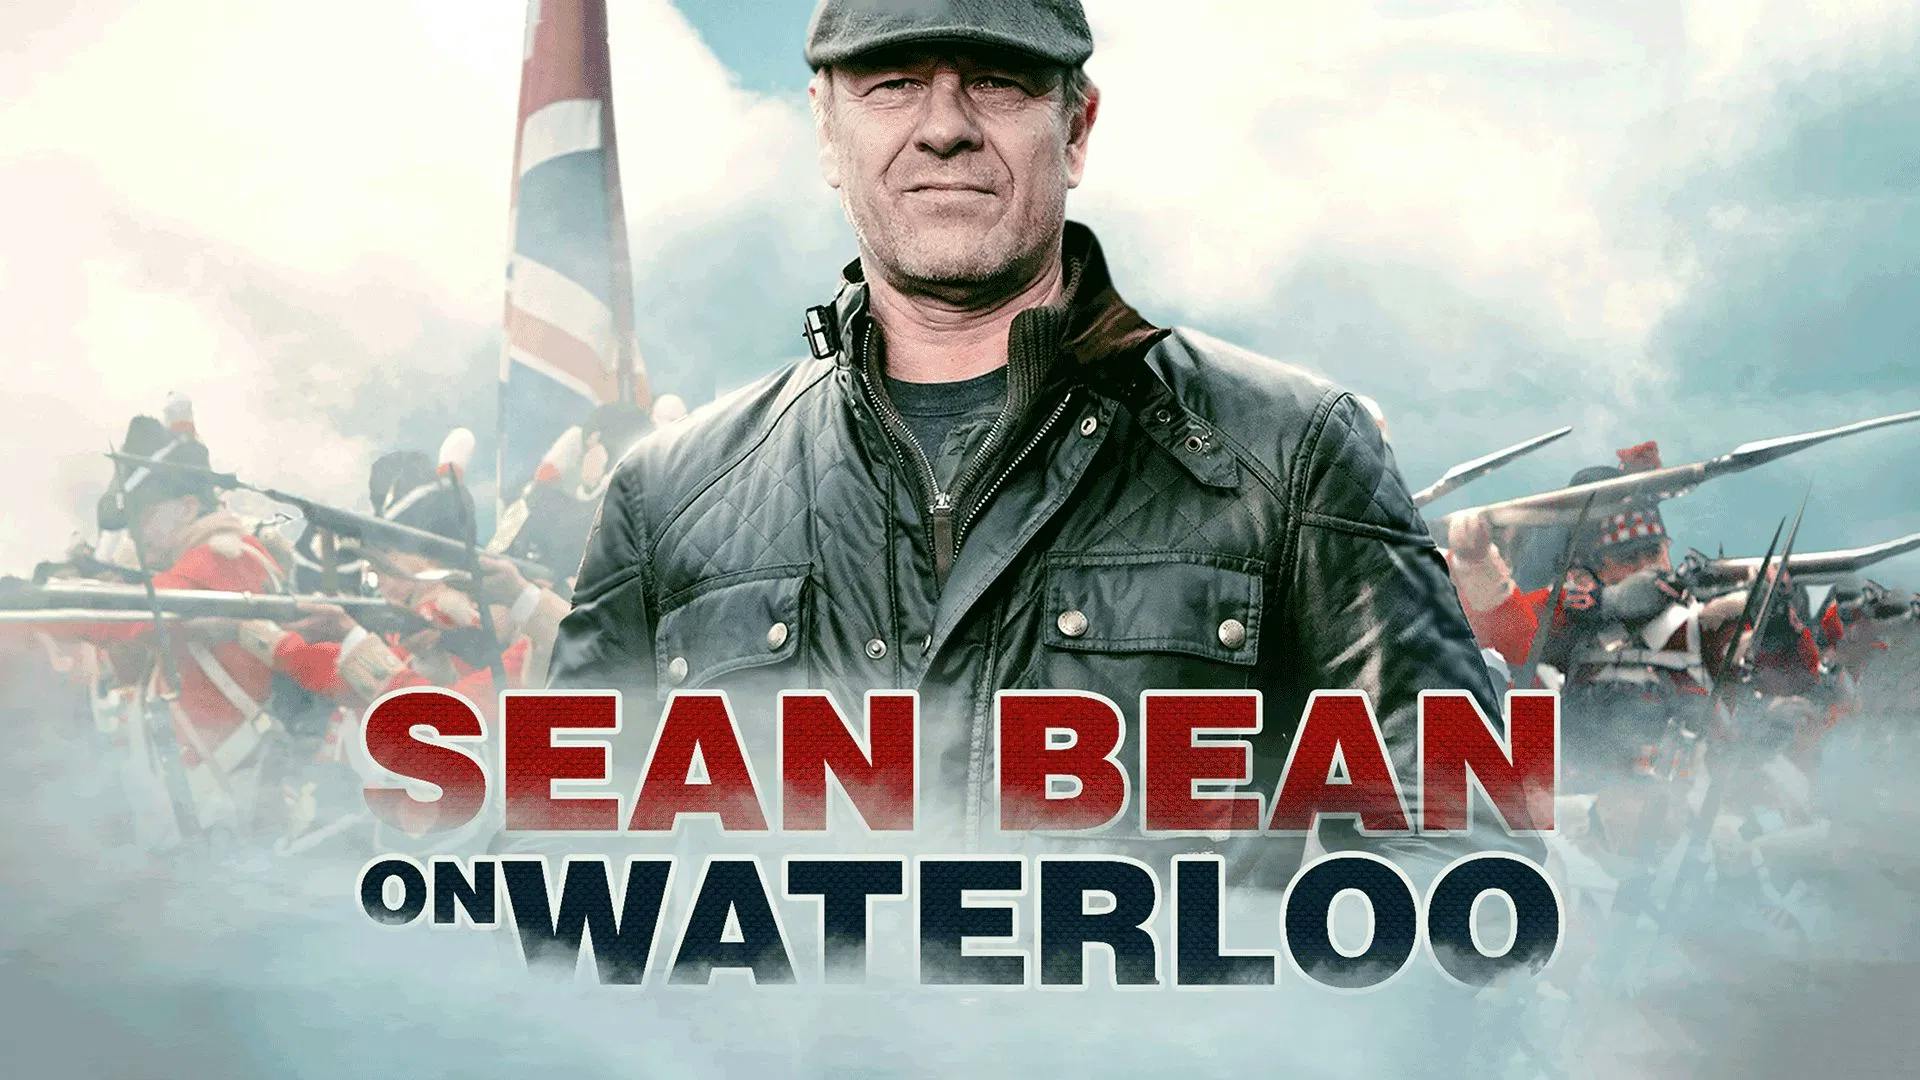 Sean Bean on Waterloo